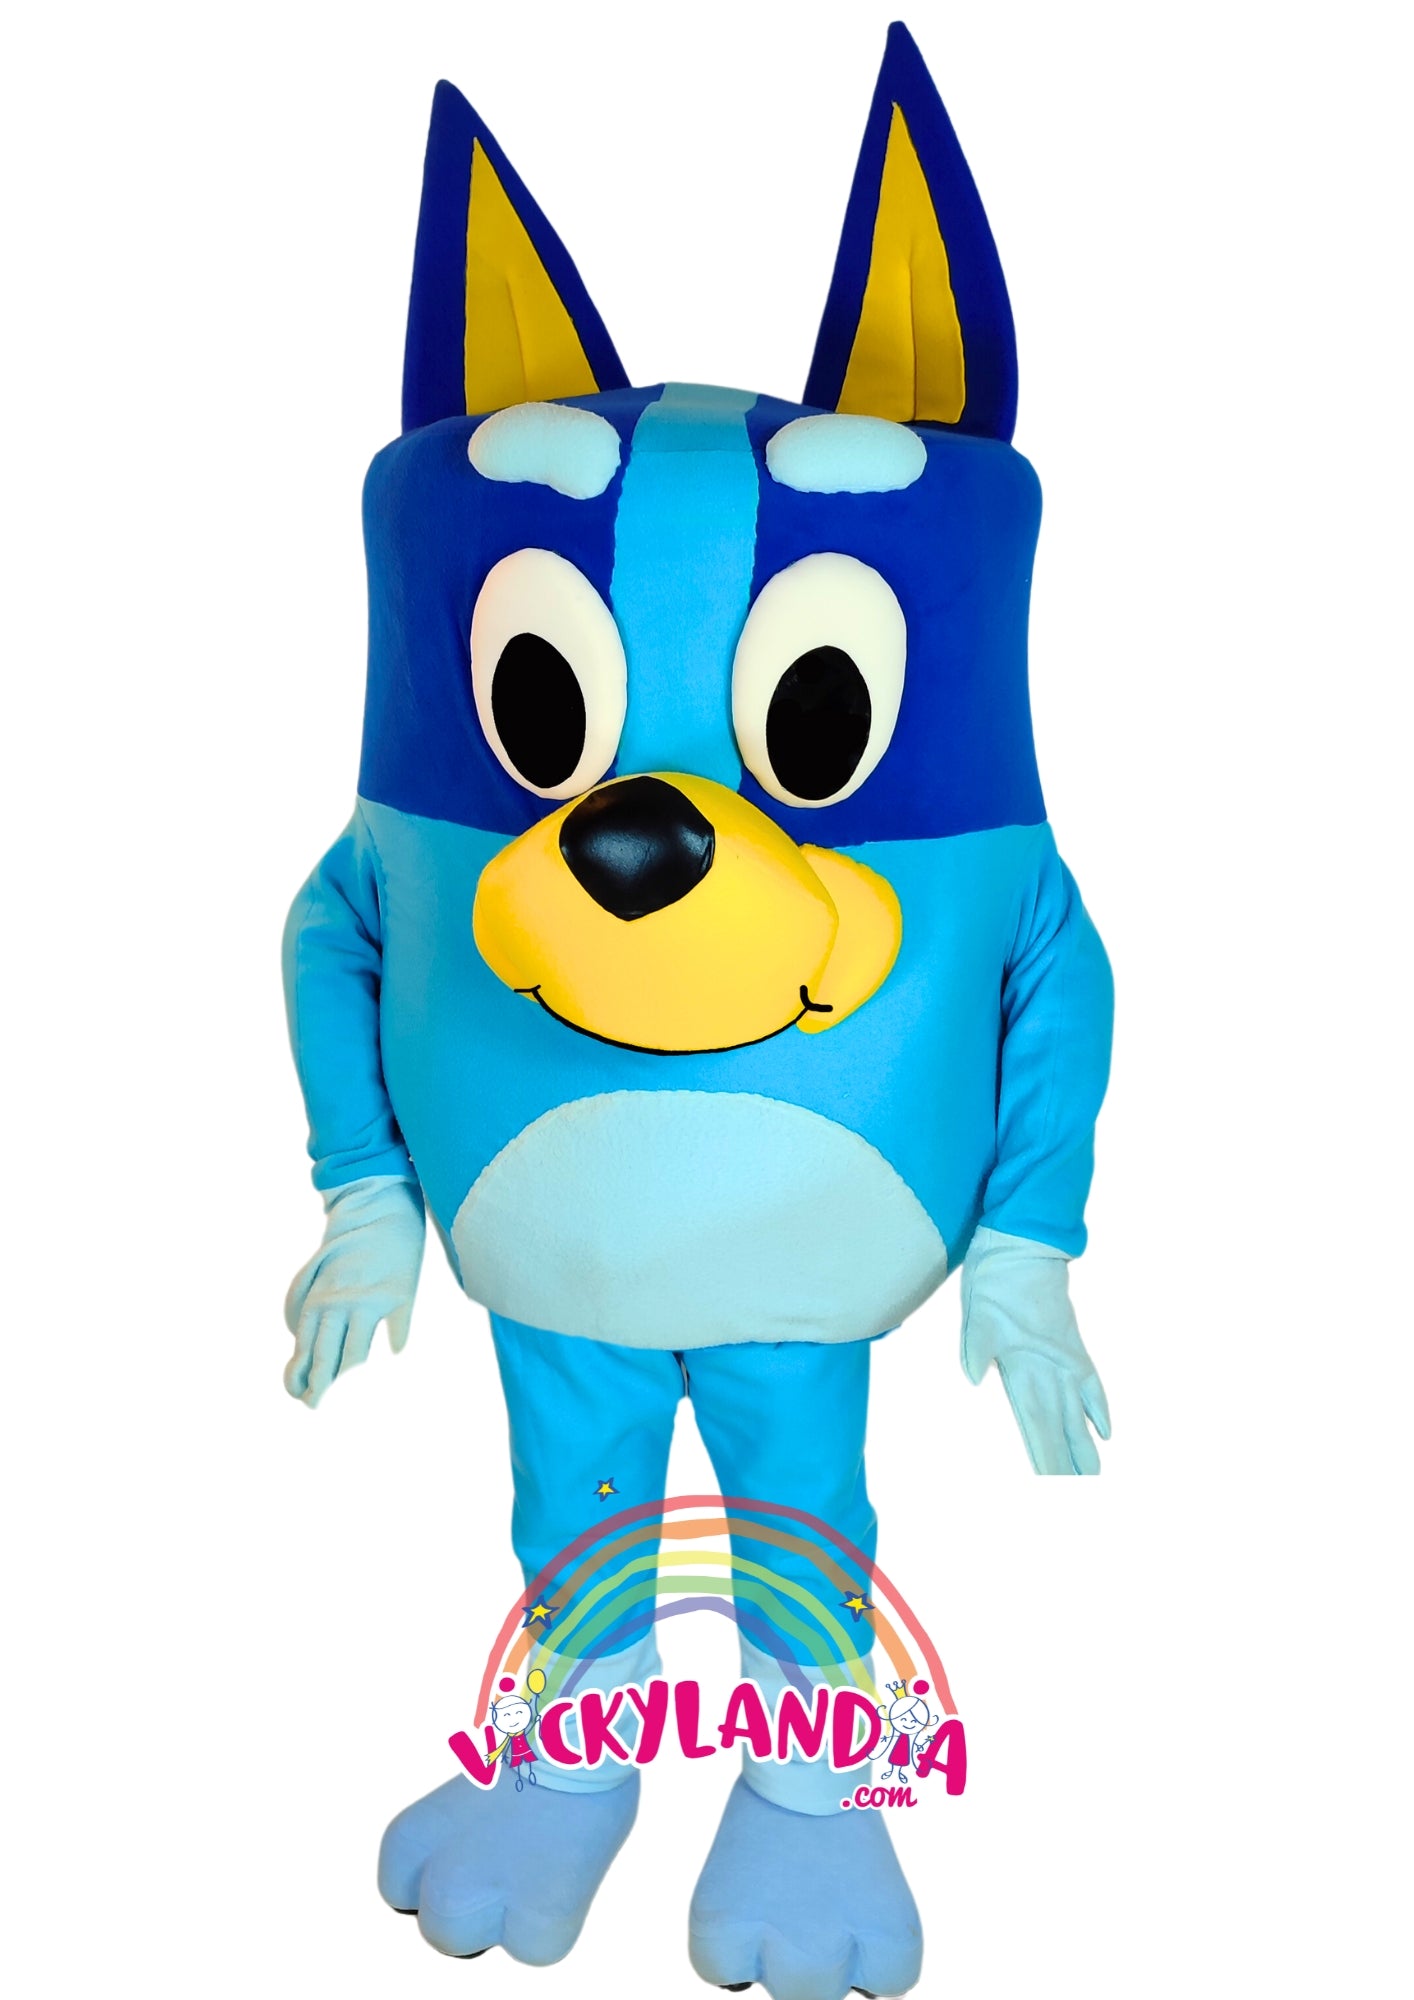 Descubre la magia de nuestro muñeco publicitario de Cachorra Azul en Vickylandia. Son disfraces cabezones perfectos para fiestas infantiles, shows, cumpleaños, estrategias publicitarias, carnavales, fiestas patronales, espectáculos, cabalgatas y cualquier tipo de evento